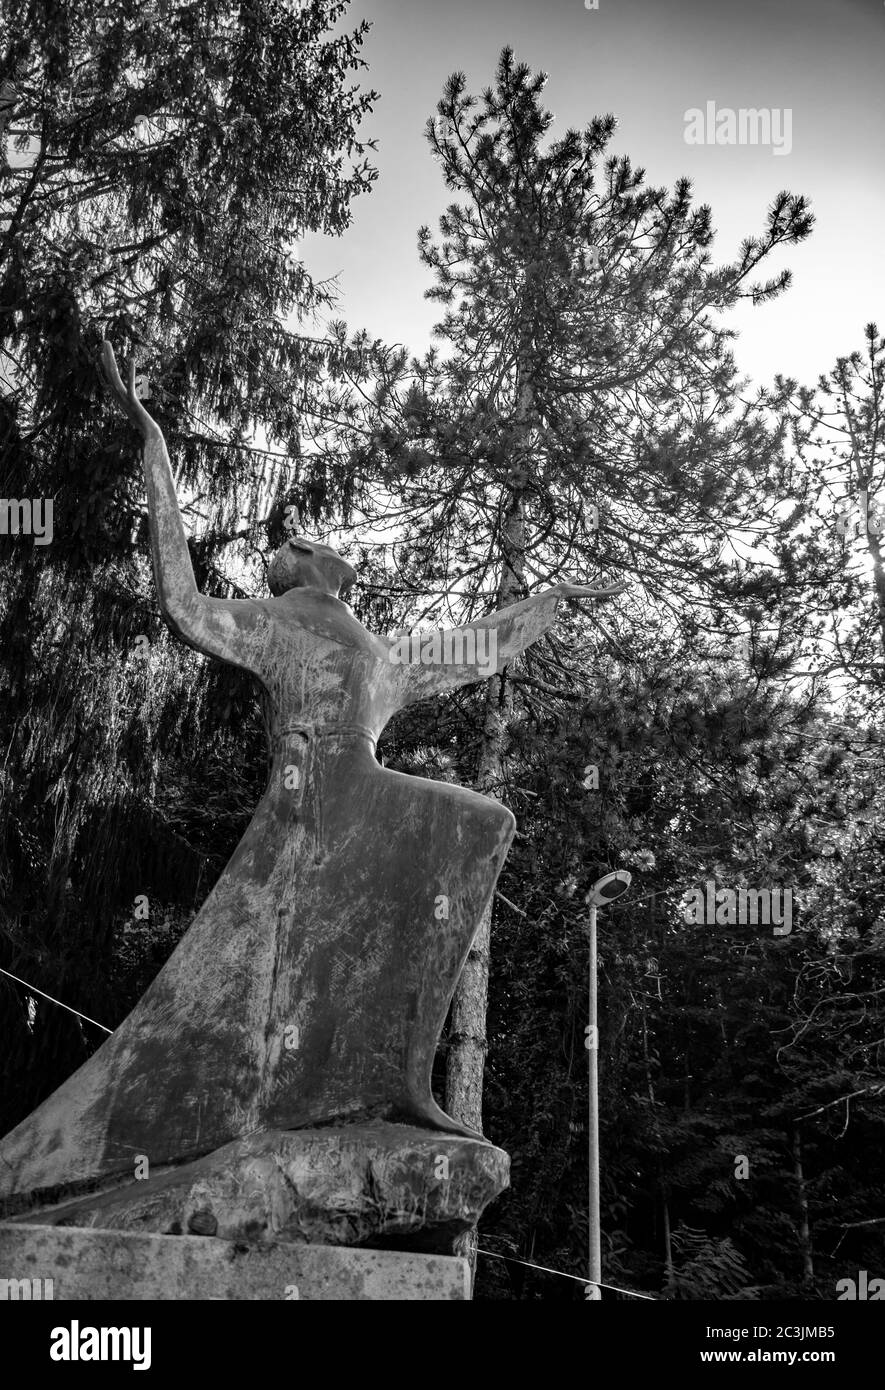 6 octobre 2019 - Bellegra, Latium, Italie - Couvent de San Francesco. La statue d'un Saint frère, dans l'adoration et la contemplation de Dieu. Bras et mains Banque D'Images